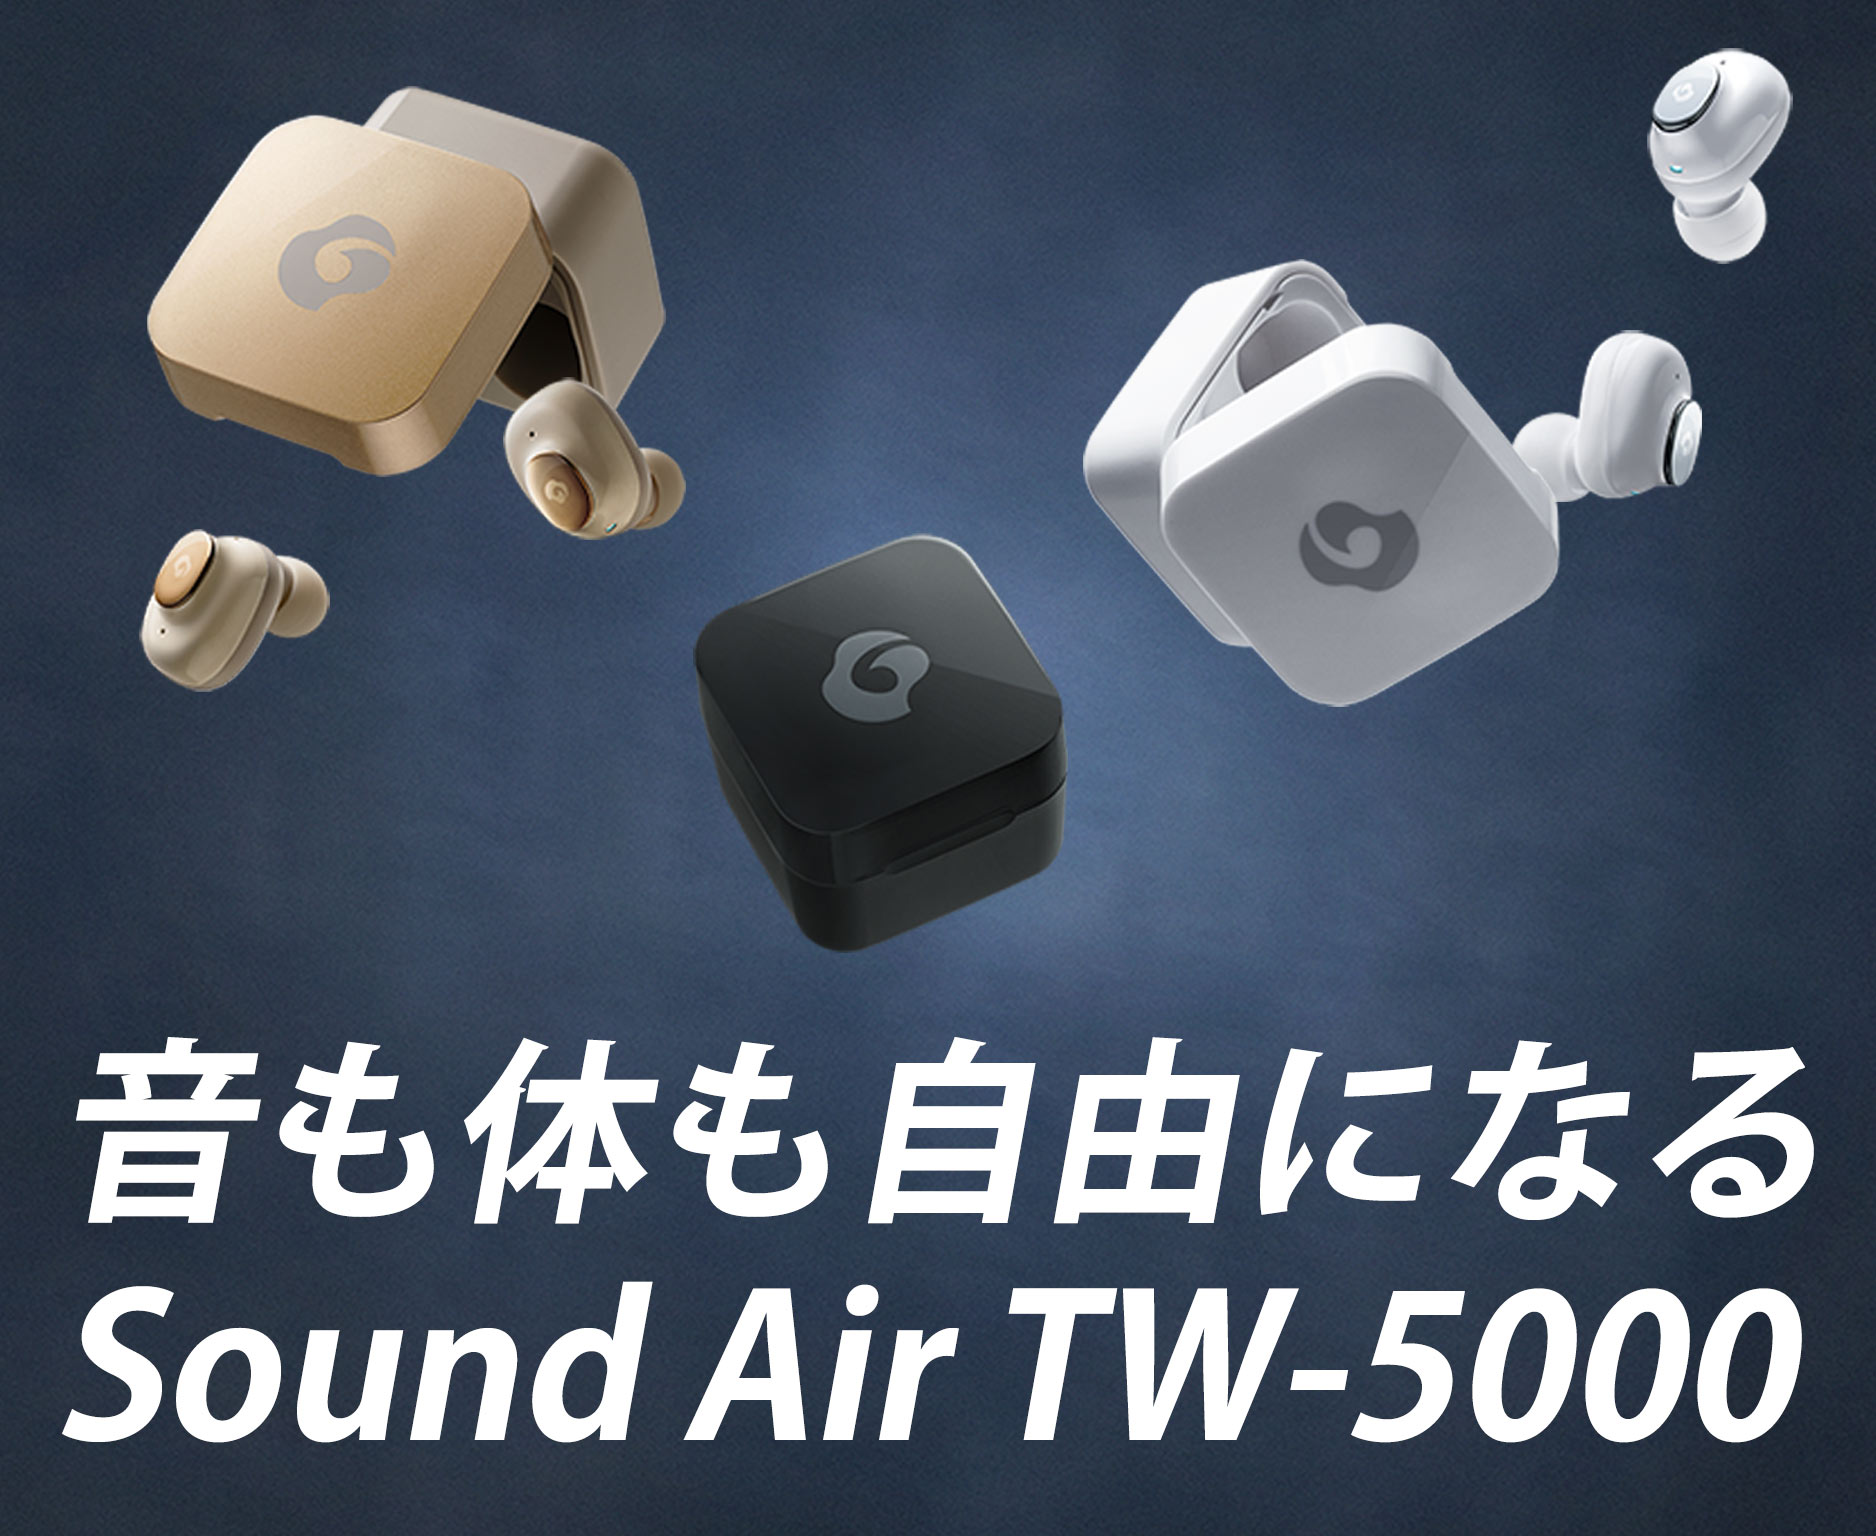 完全ワイヤレスイヤホン GLIDiC Sound Air TW-5000